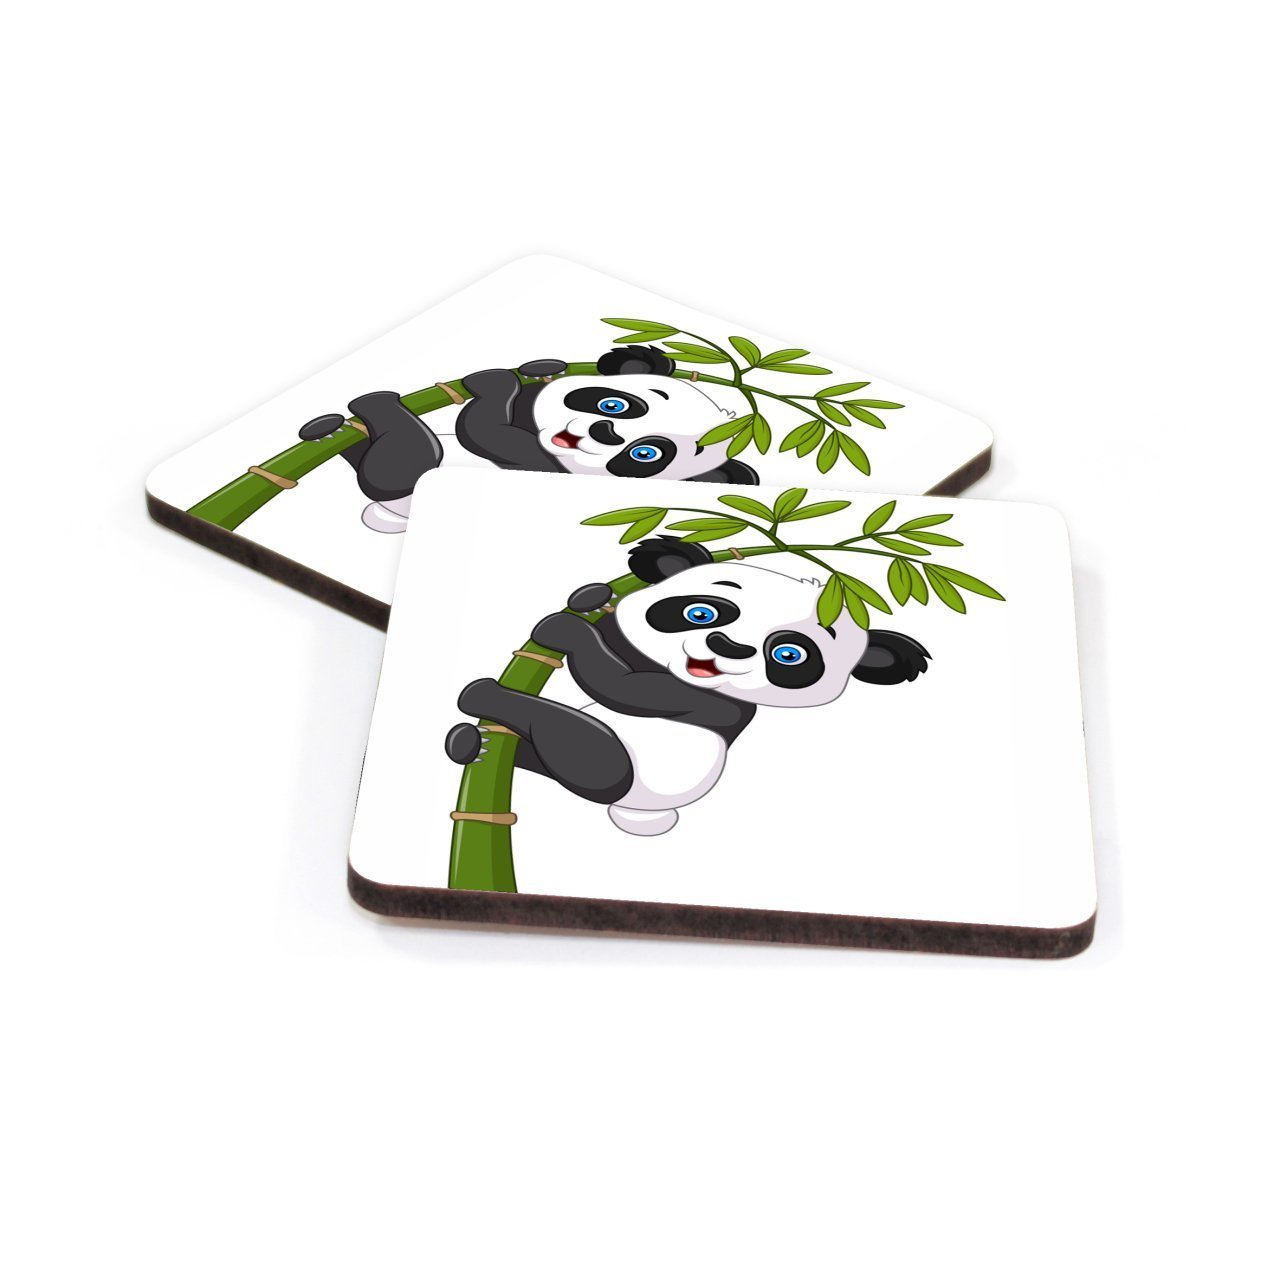 Dekoratif Mdf Bardak Altlığı Panda Desenli